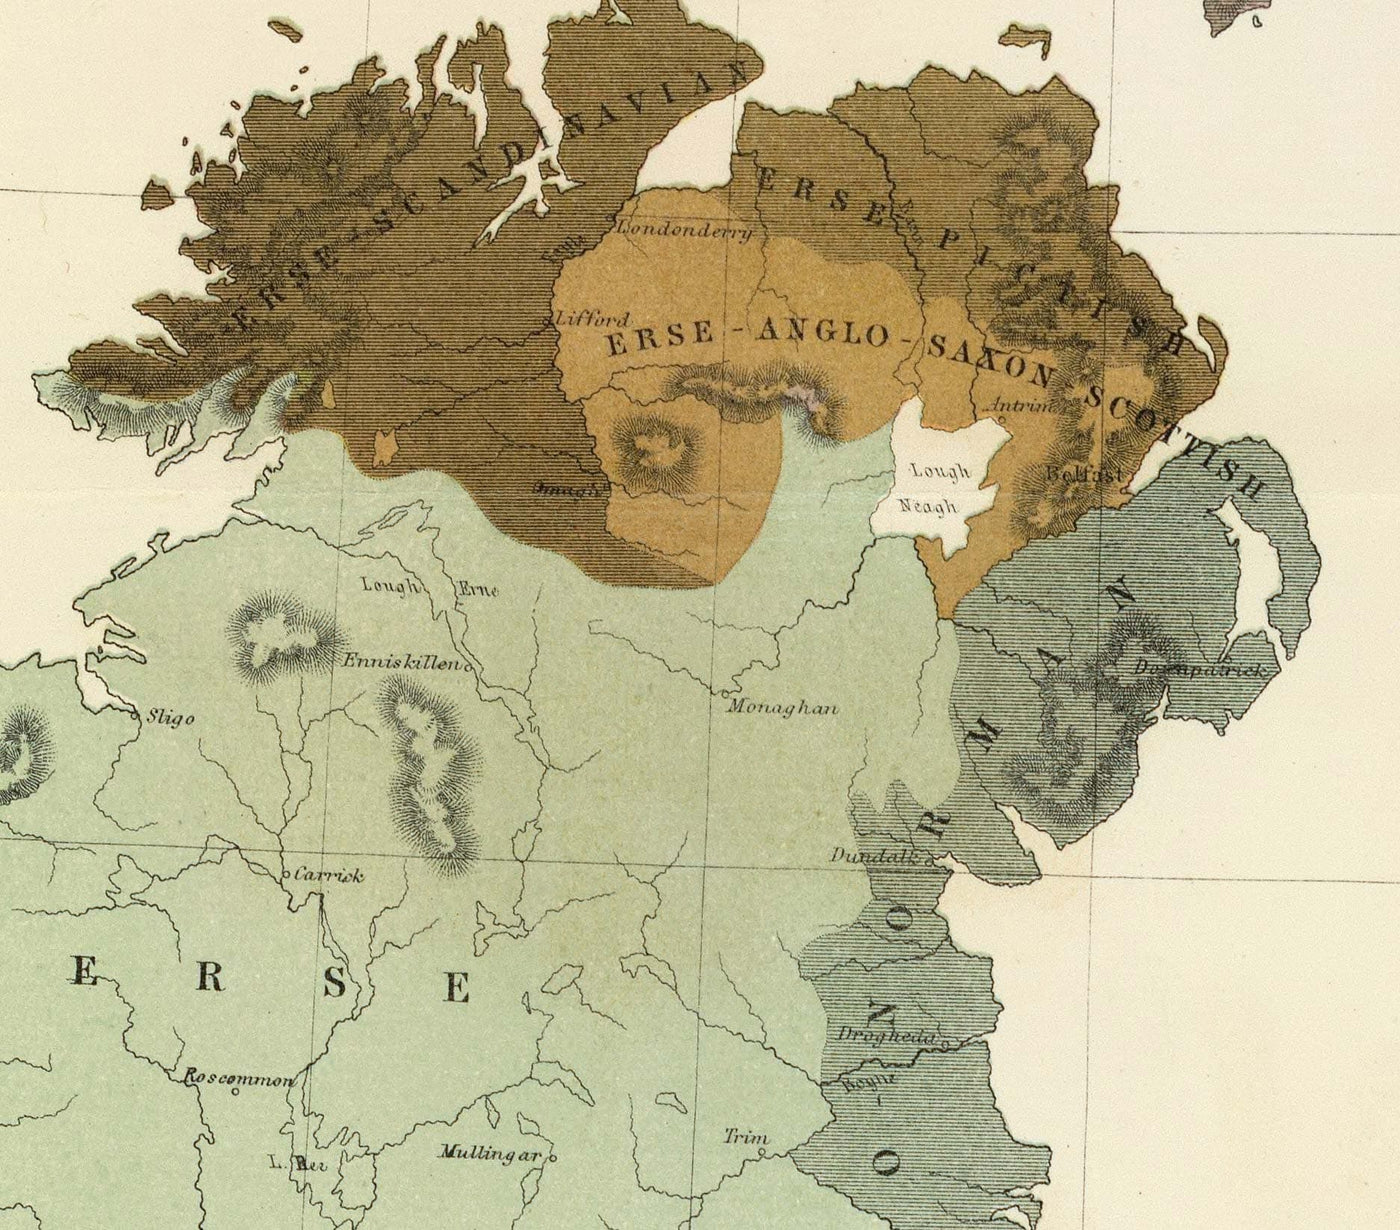 Ancienne carte de l'ancienne Grande-Bretagne, 1856 - Pays de Galles, Erse, Irlande gaélique, Pictes, Tribus celtiques de l'âge du fer, Silures